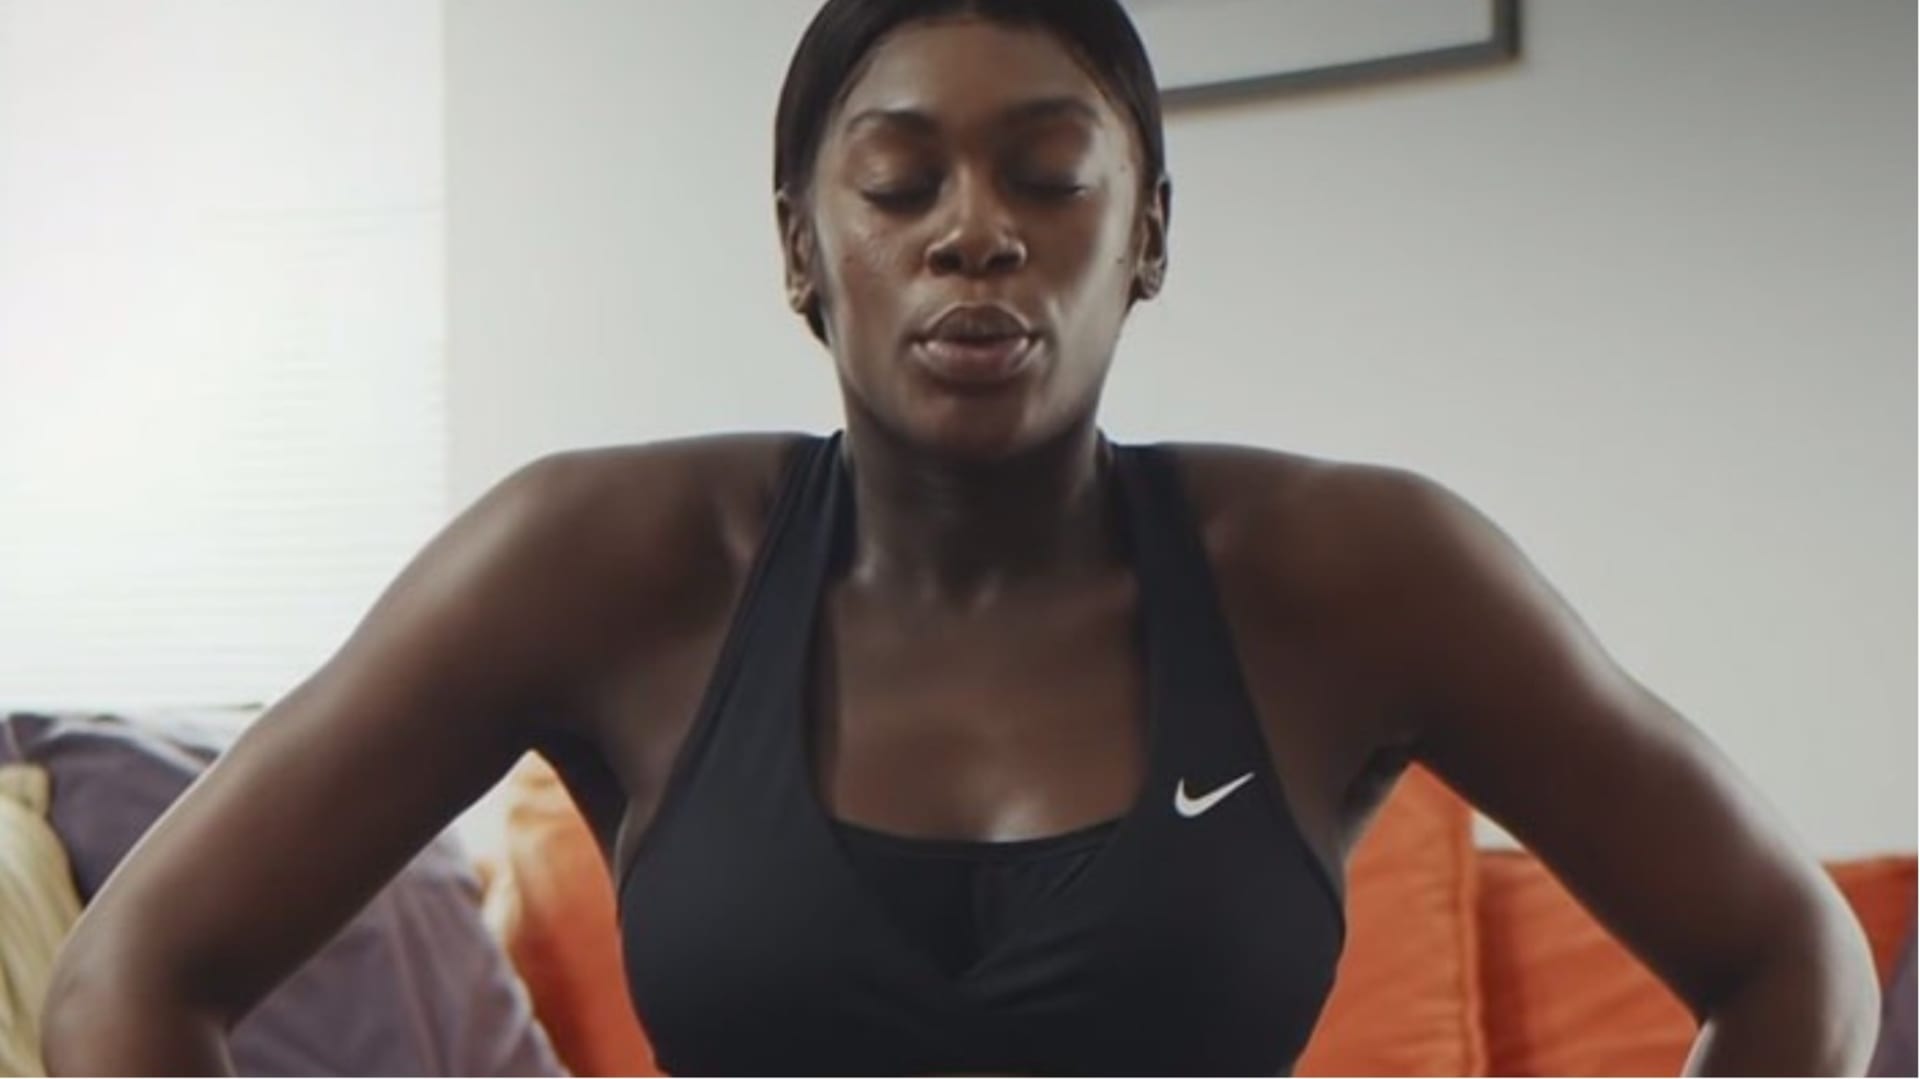 Odvážná reklama od společnosti Nike 1